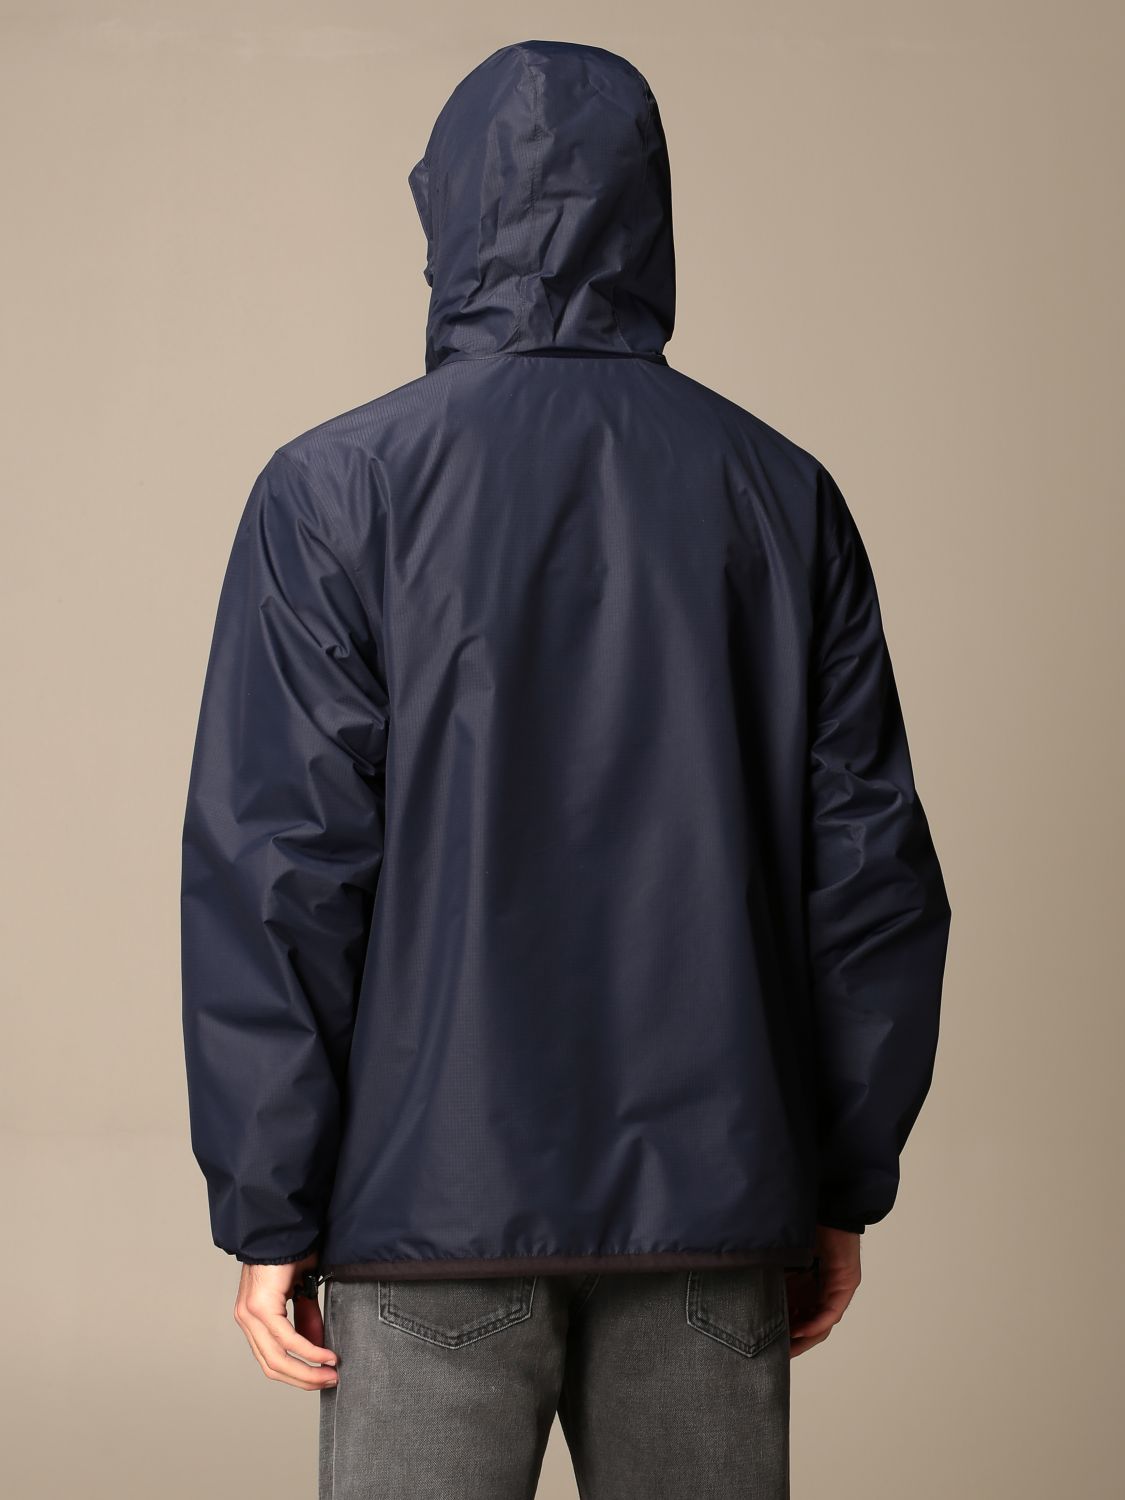 FENDI: reversible nylon jacket with FF logo | Jacket Fendi Men Blue ...